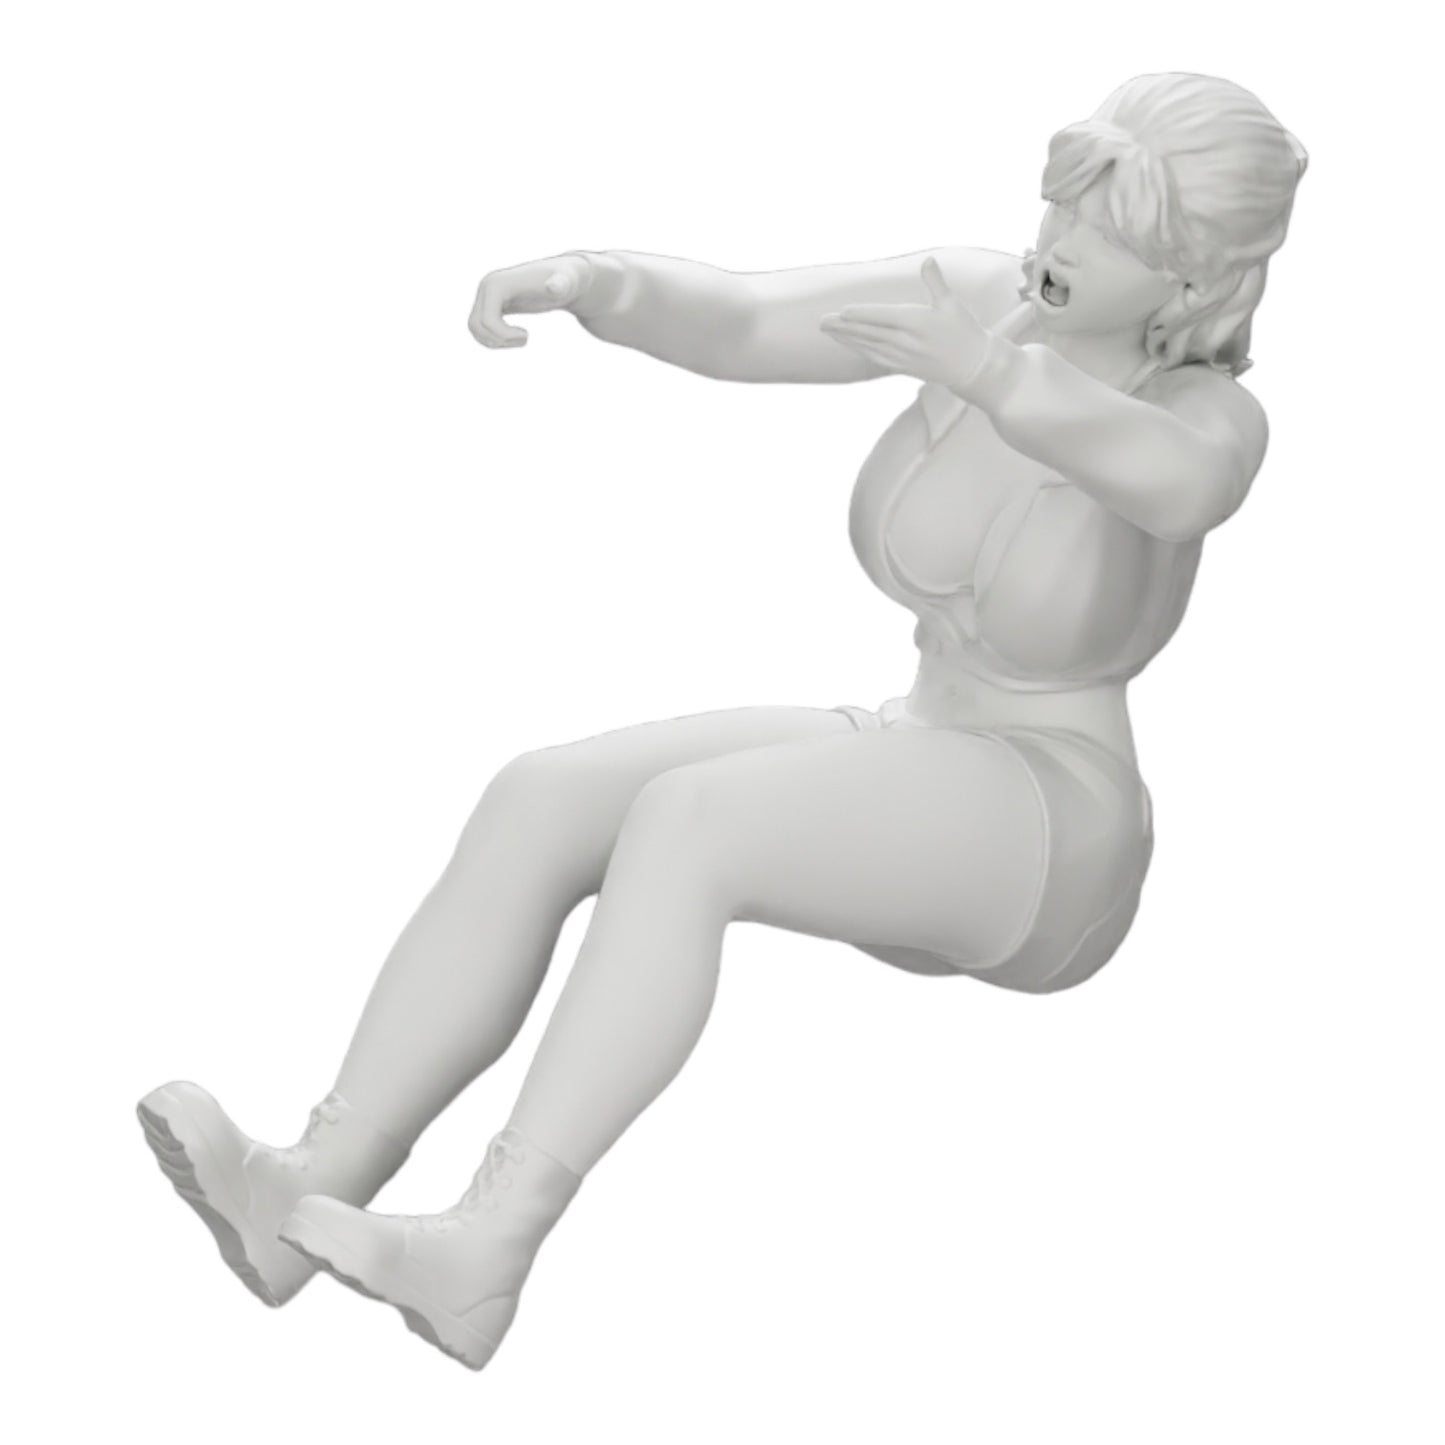 Diorama Modellbau Produktfoto 0: Wütende junge Frau im Minishirt schreit aus dem Auto (Ref Nr. A17)